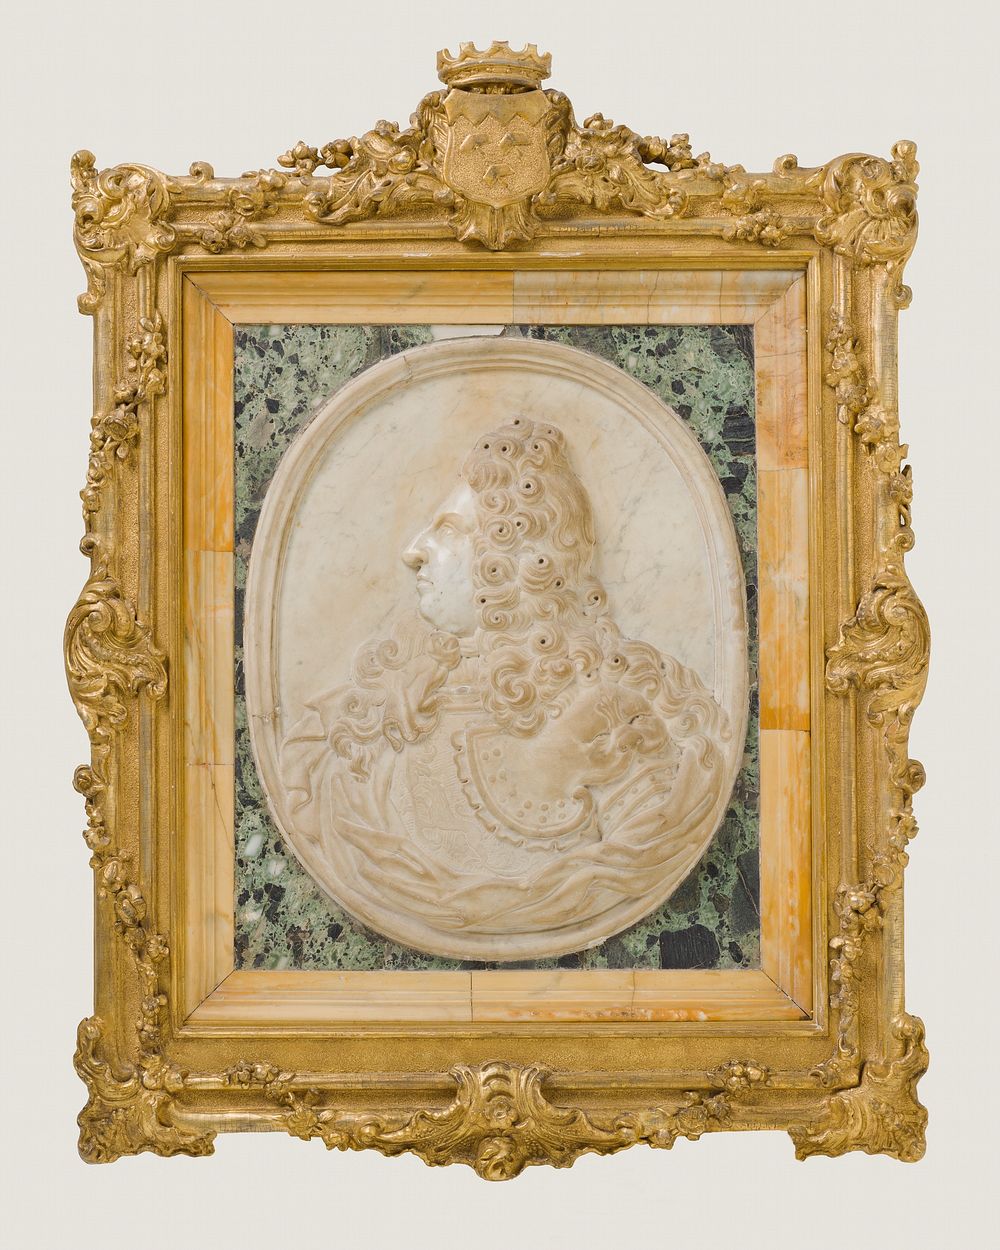 Portrait of Giovanni Gastone de'Medici by Filippo della Valle